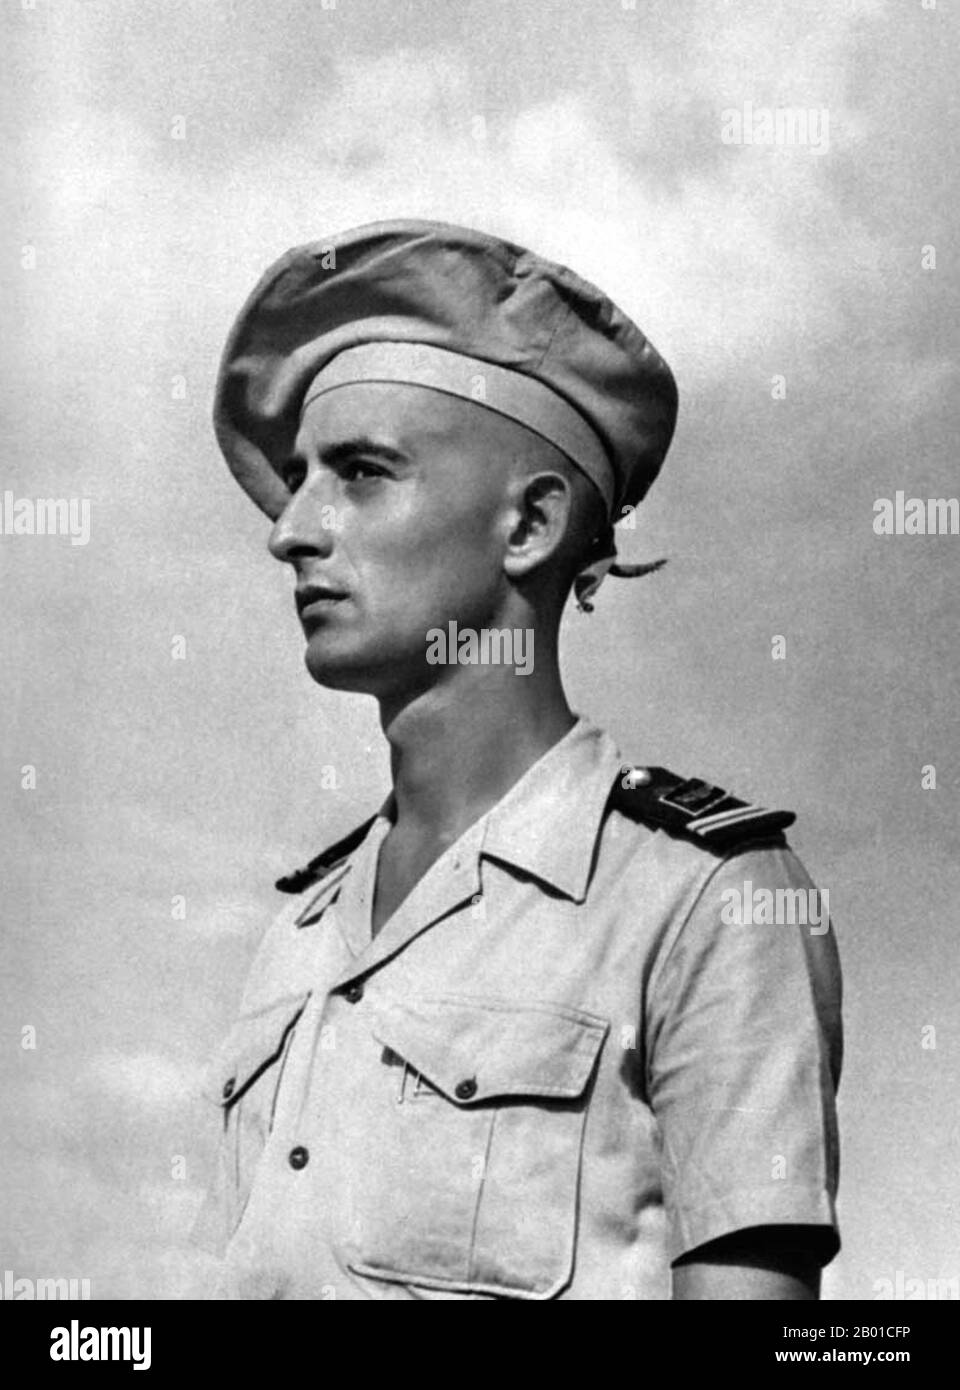 Frankreich/Vietnam: Leutnant Bernard de Lattre de Tassigny (11. Februar 1928 - 30. Mai 1951), c. 1950. Bernard de Lattre de Tassigny war ein Offizier der französischen Armee, der während des Zweiten Weltkriegs und des ersten Indochina-Krieges kämpfte. Bernard de Lattre erhielt während seiner militärischen Karriere mehrere Medaillen, darunter die Médaille Militaire. Er wurde im Alter von 23 Jahren bei Kämpfen in der Nähe von Ninh Binh getötet. Zum Zeitpunkt seines Todes war sein Vater, General Jean de Lattre de Tassigny, der Generalkommandeur der französischen Streitkräfte in Indochina. Bernards Tod wurde in der Zeitung weit verbreitet. Stockfoto